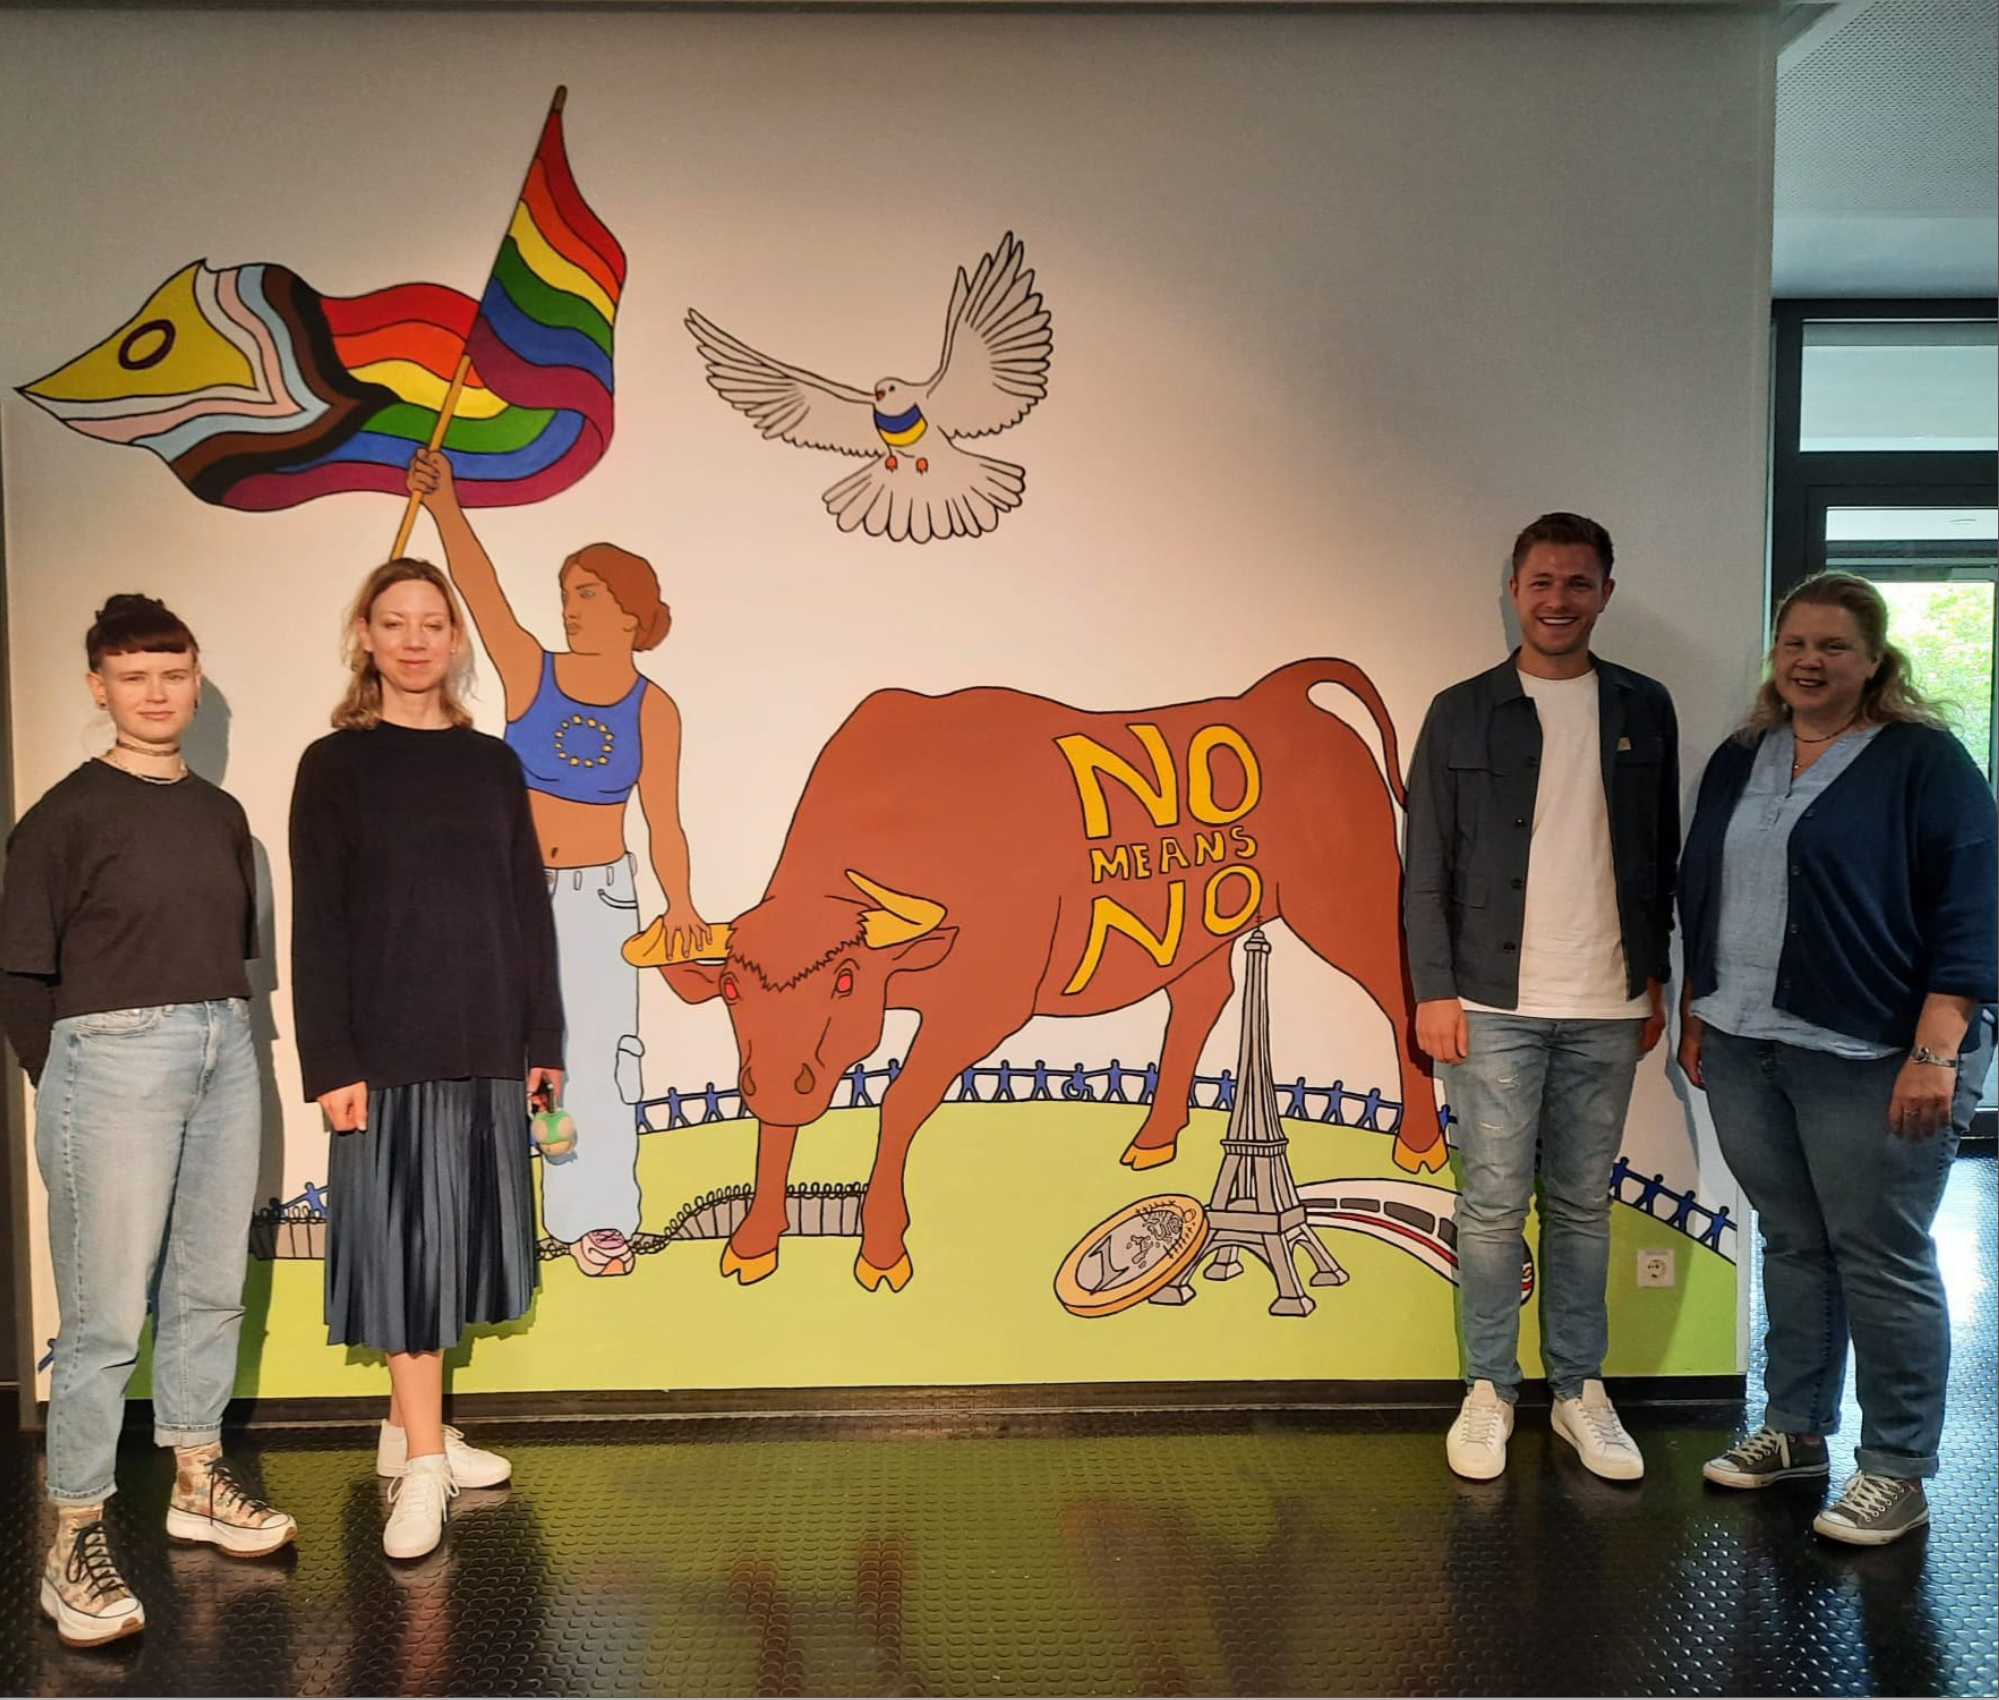 Europatagfeier am Gymnasium Dingolfing: Ein Fest für Frieden und Einheit